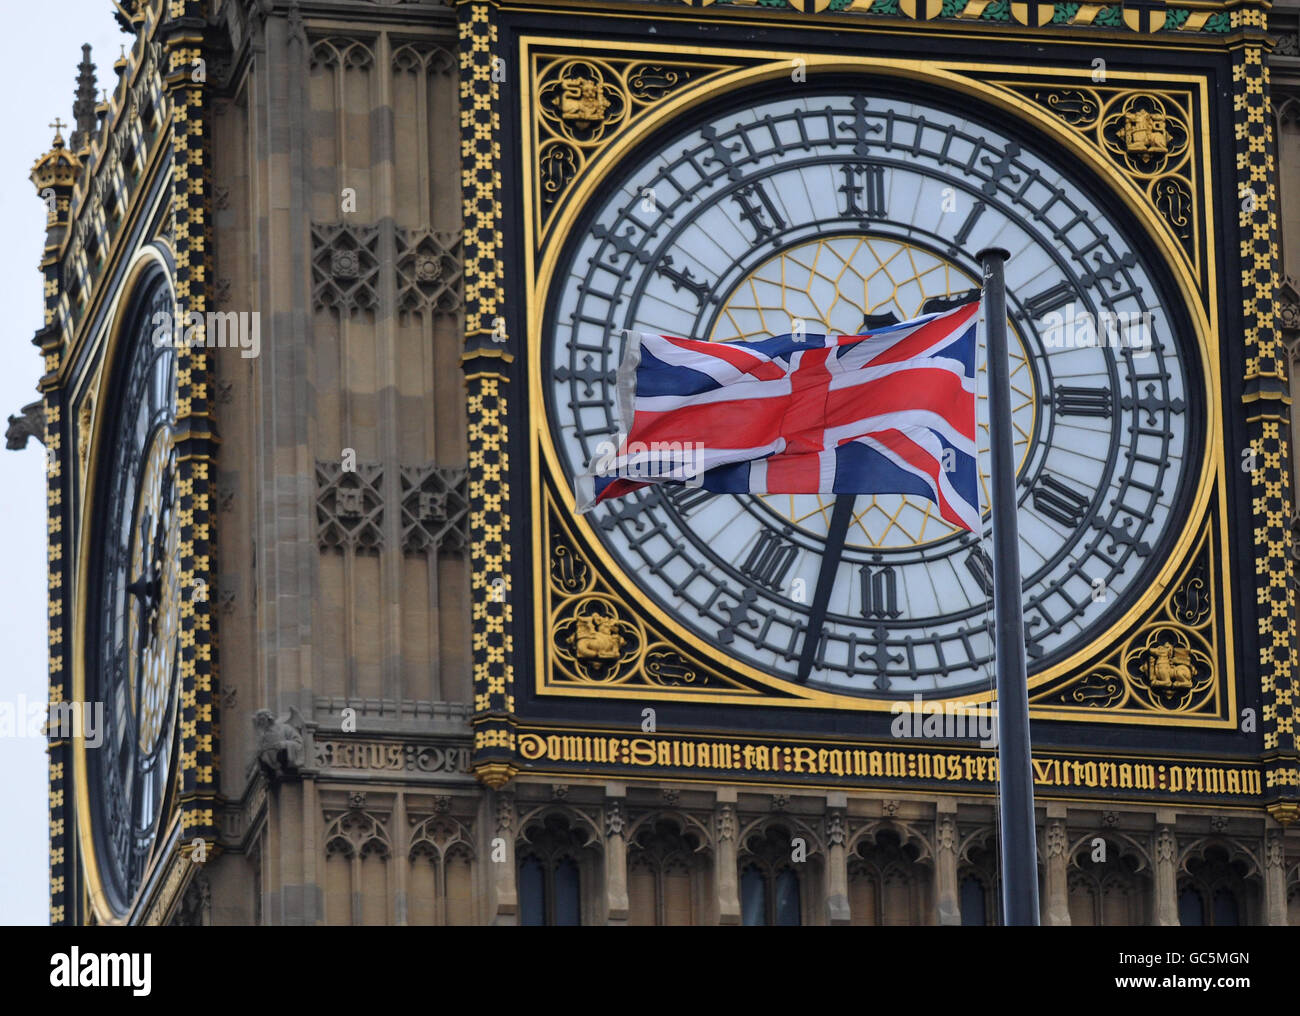 La bandiera dell'Unione vola oggi a Westminster il primo giorno del nuovo parlamento, dopo che la Regina ha ufficialmente aperto la nuova sessione all'apertura del Parlamento di quest'anno. Foto Stock